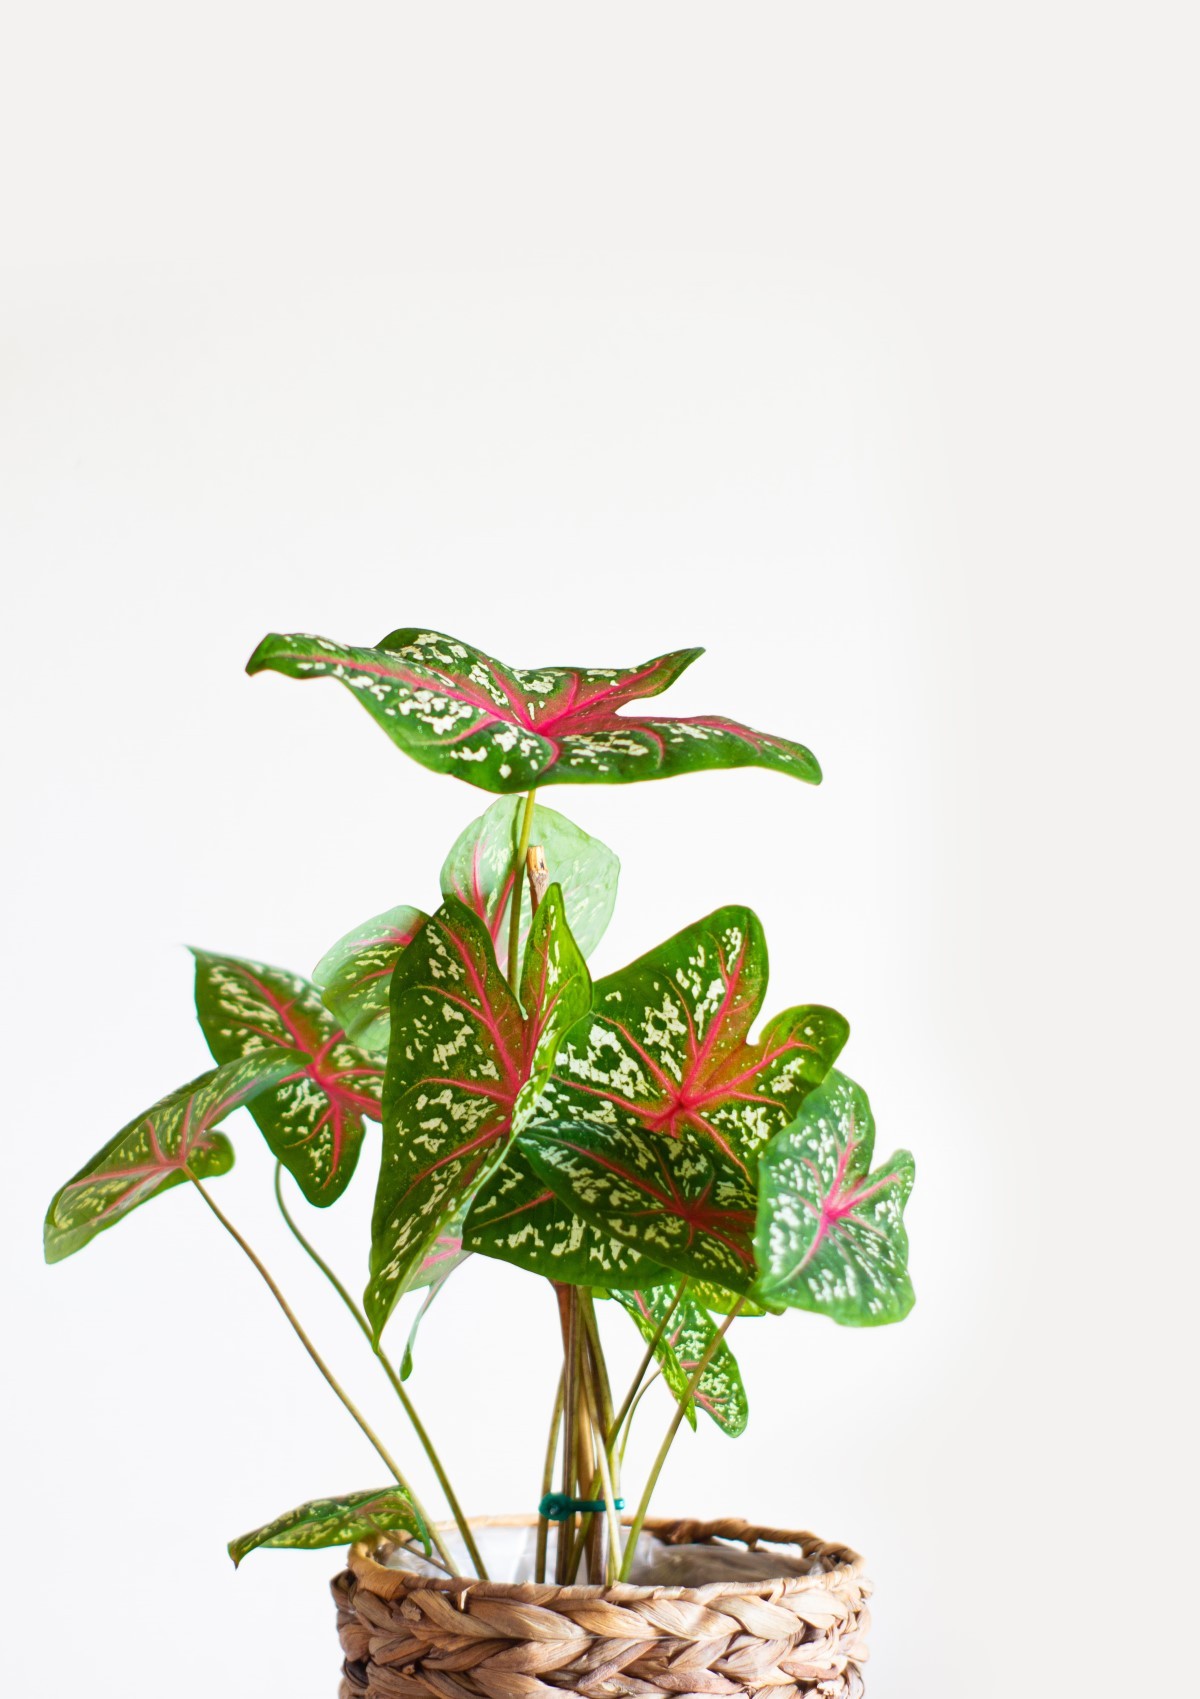 A planta caladium, também conhecida como Tinhorão, é perfeita para adicionar um toque de cor na decoração de casa e jardim (Foto: Unsplash / Rui Silvestre / CreativeCommons)